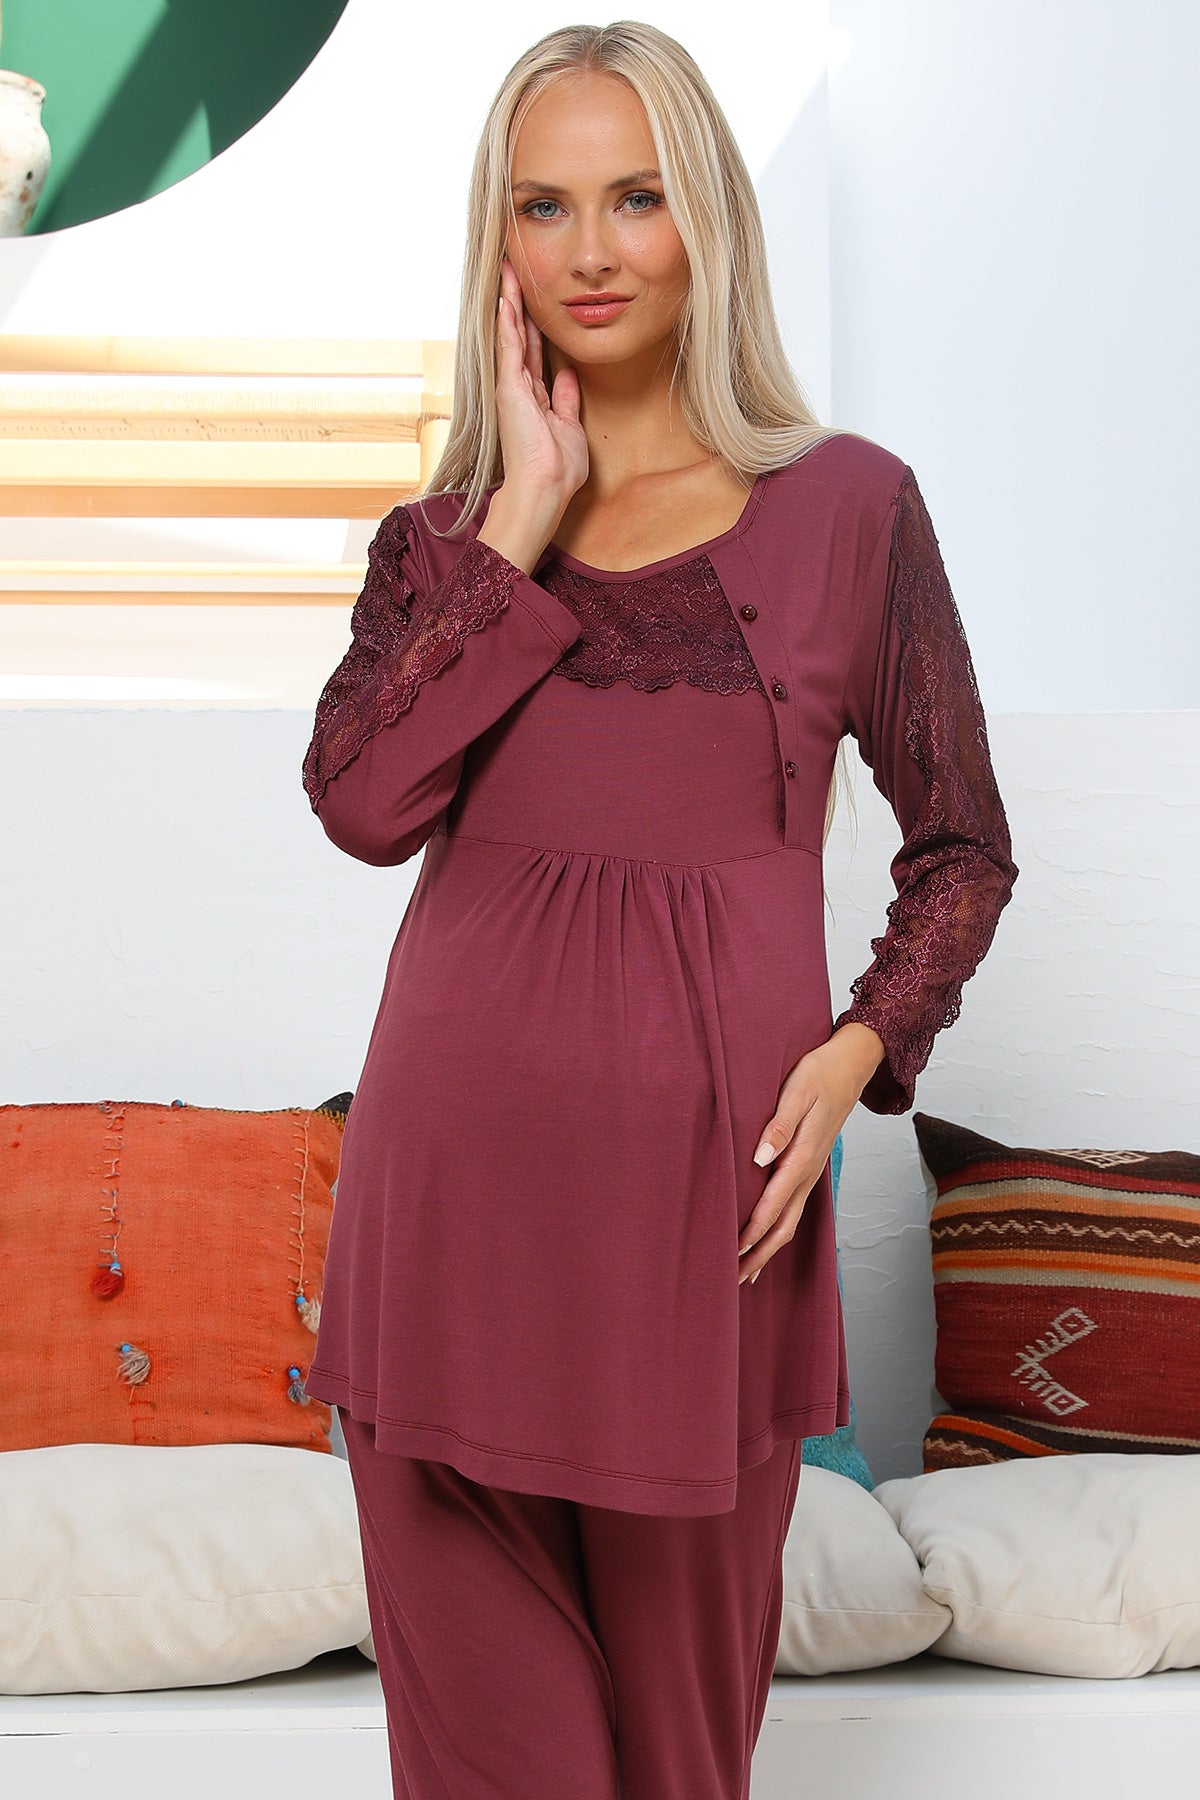 Shopymommy 55303 Elegance Lace Sleeves Maternity & Nursing Pajamas Plum